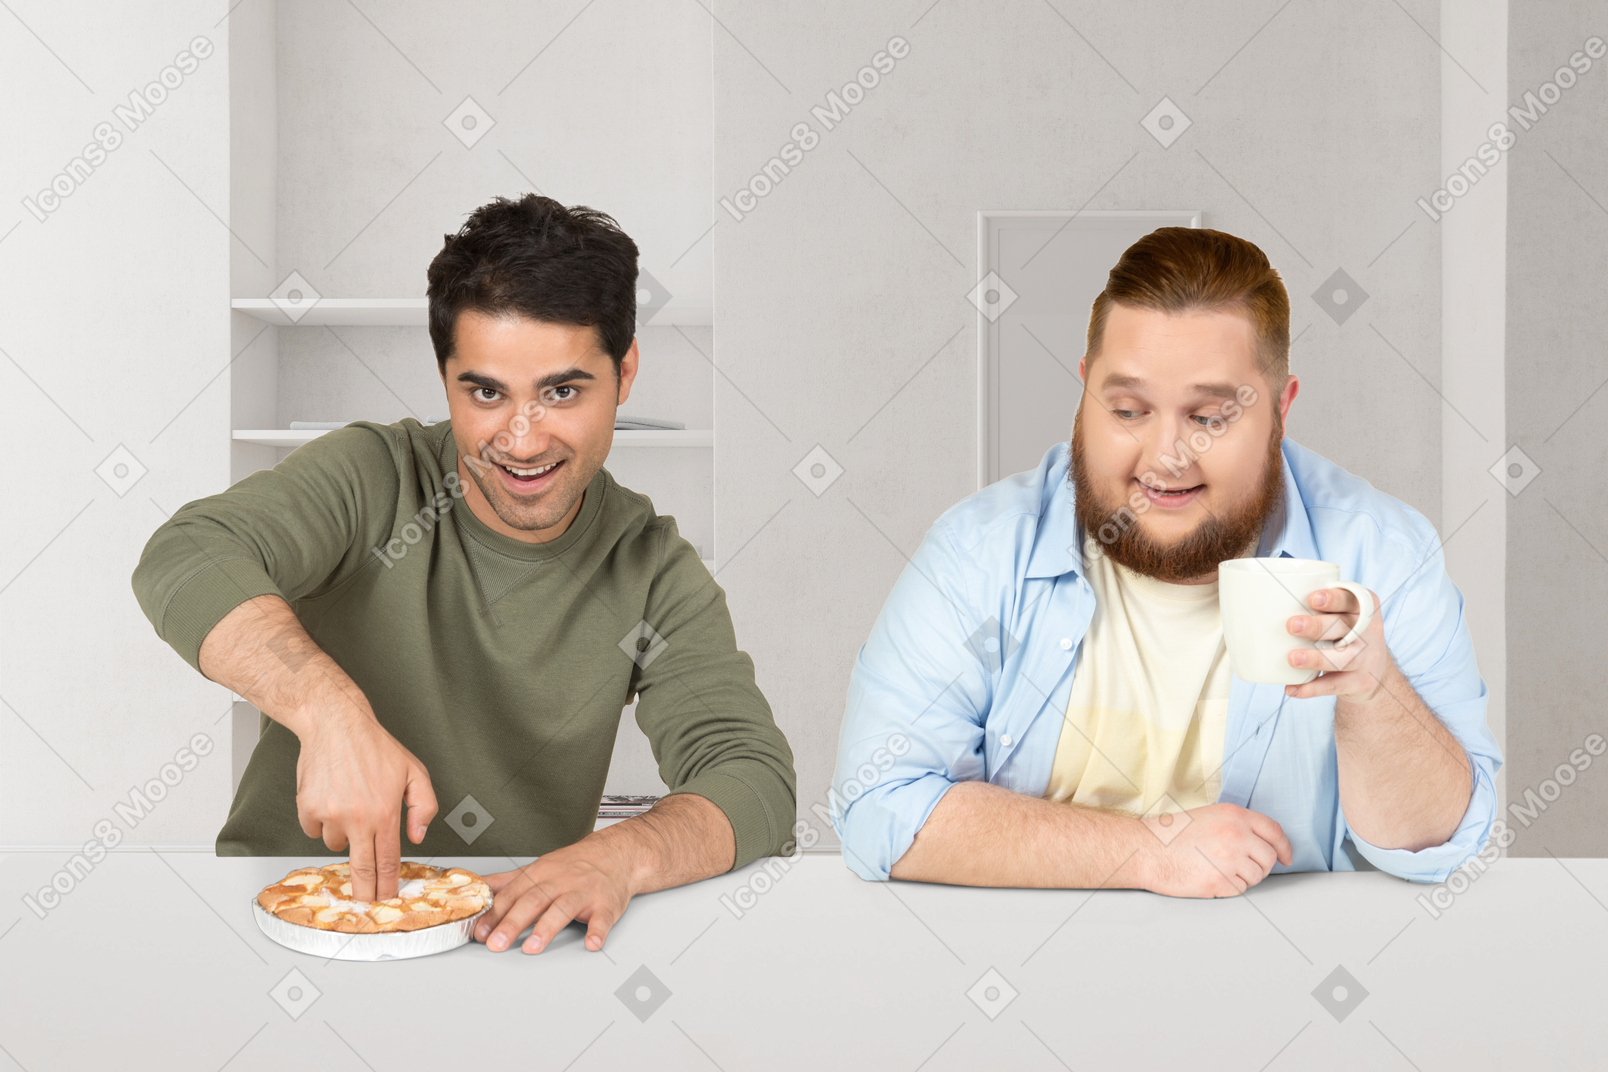 테이블에 앉아있는 두 친구의 콜라주와 파이에 손가락을 집어 넣는 중 하나